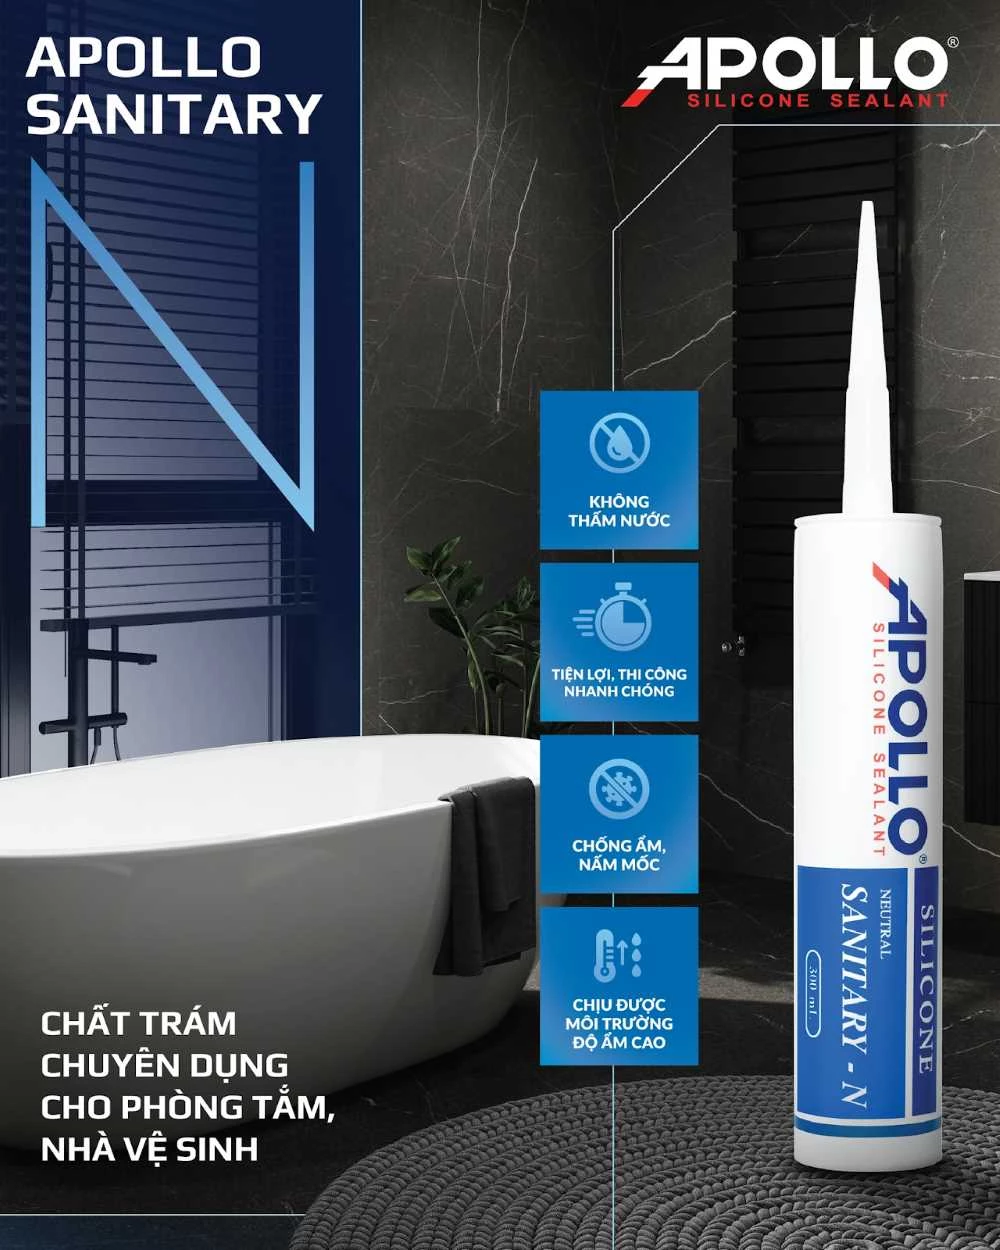 Apollo Silicone Sealant Sanitary - N thích hợp ứng dụng cho khu vực nhà vệ sinh, nhà tắm